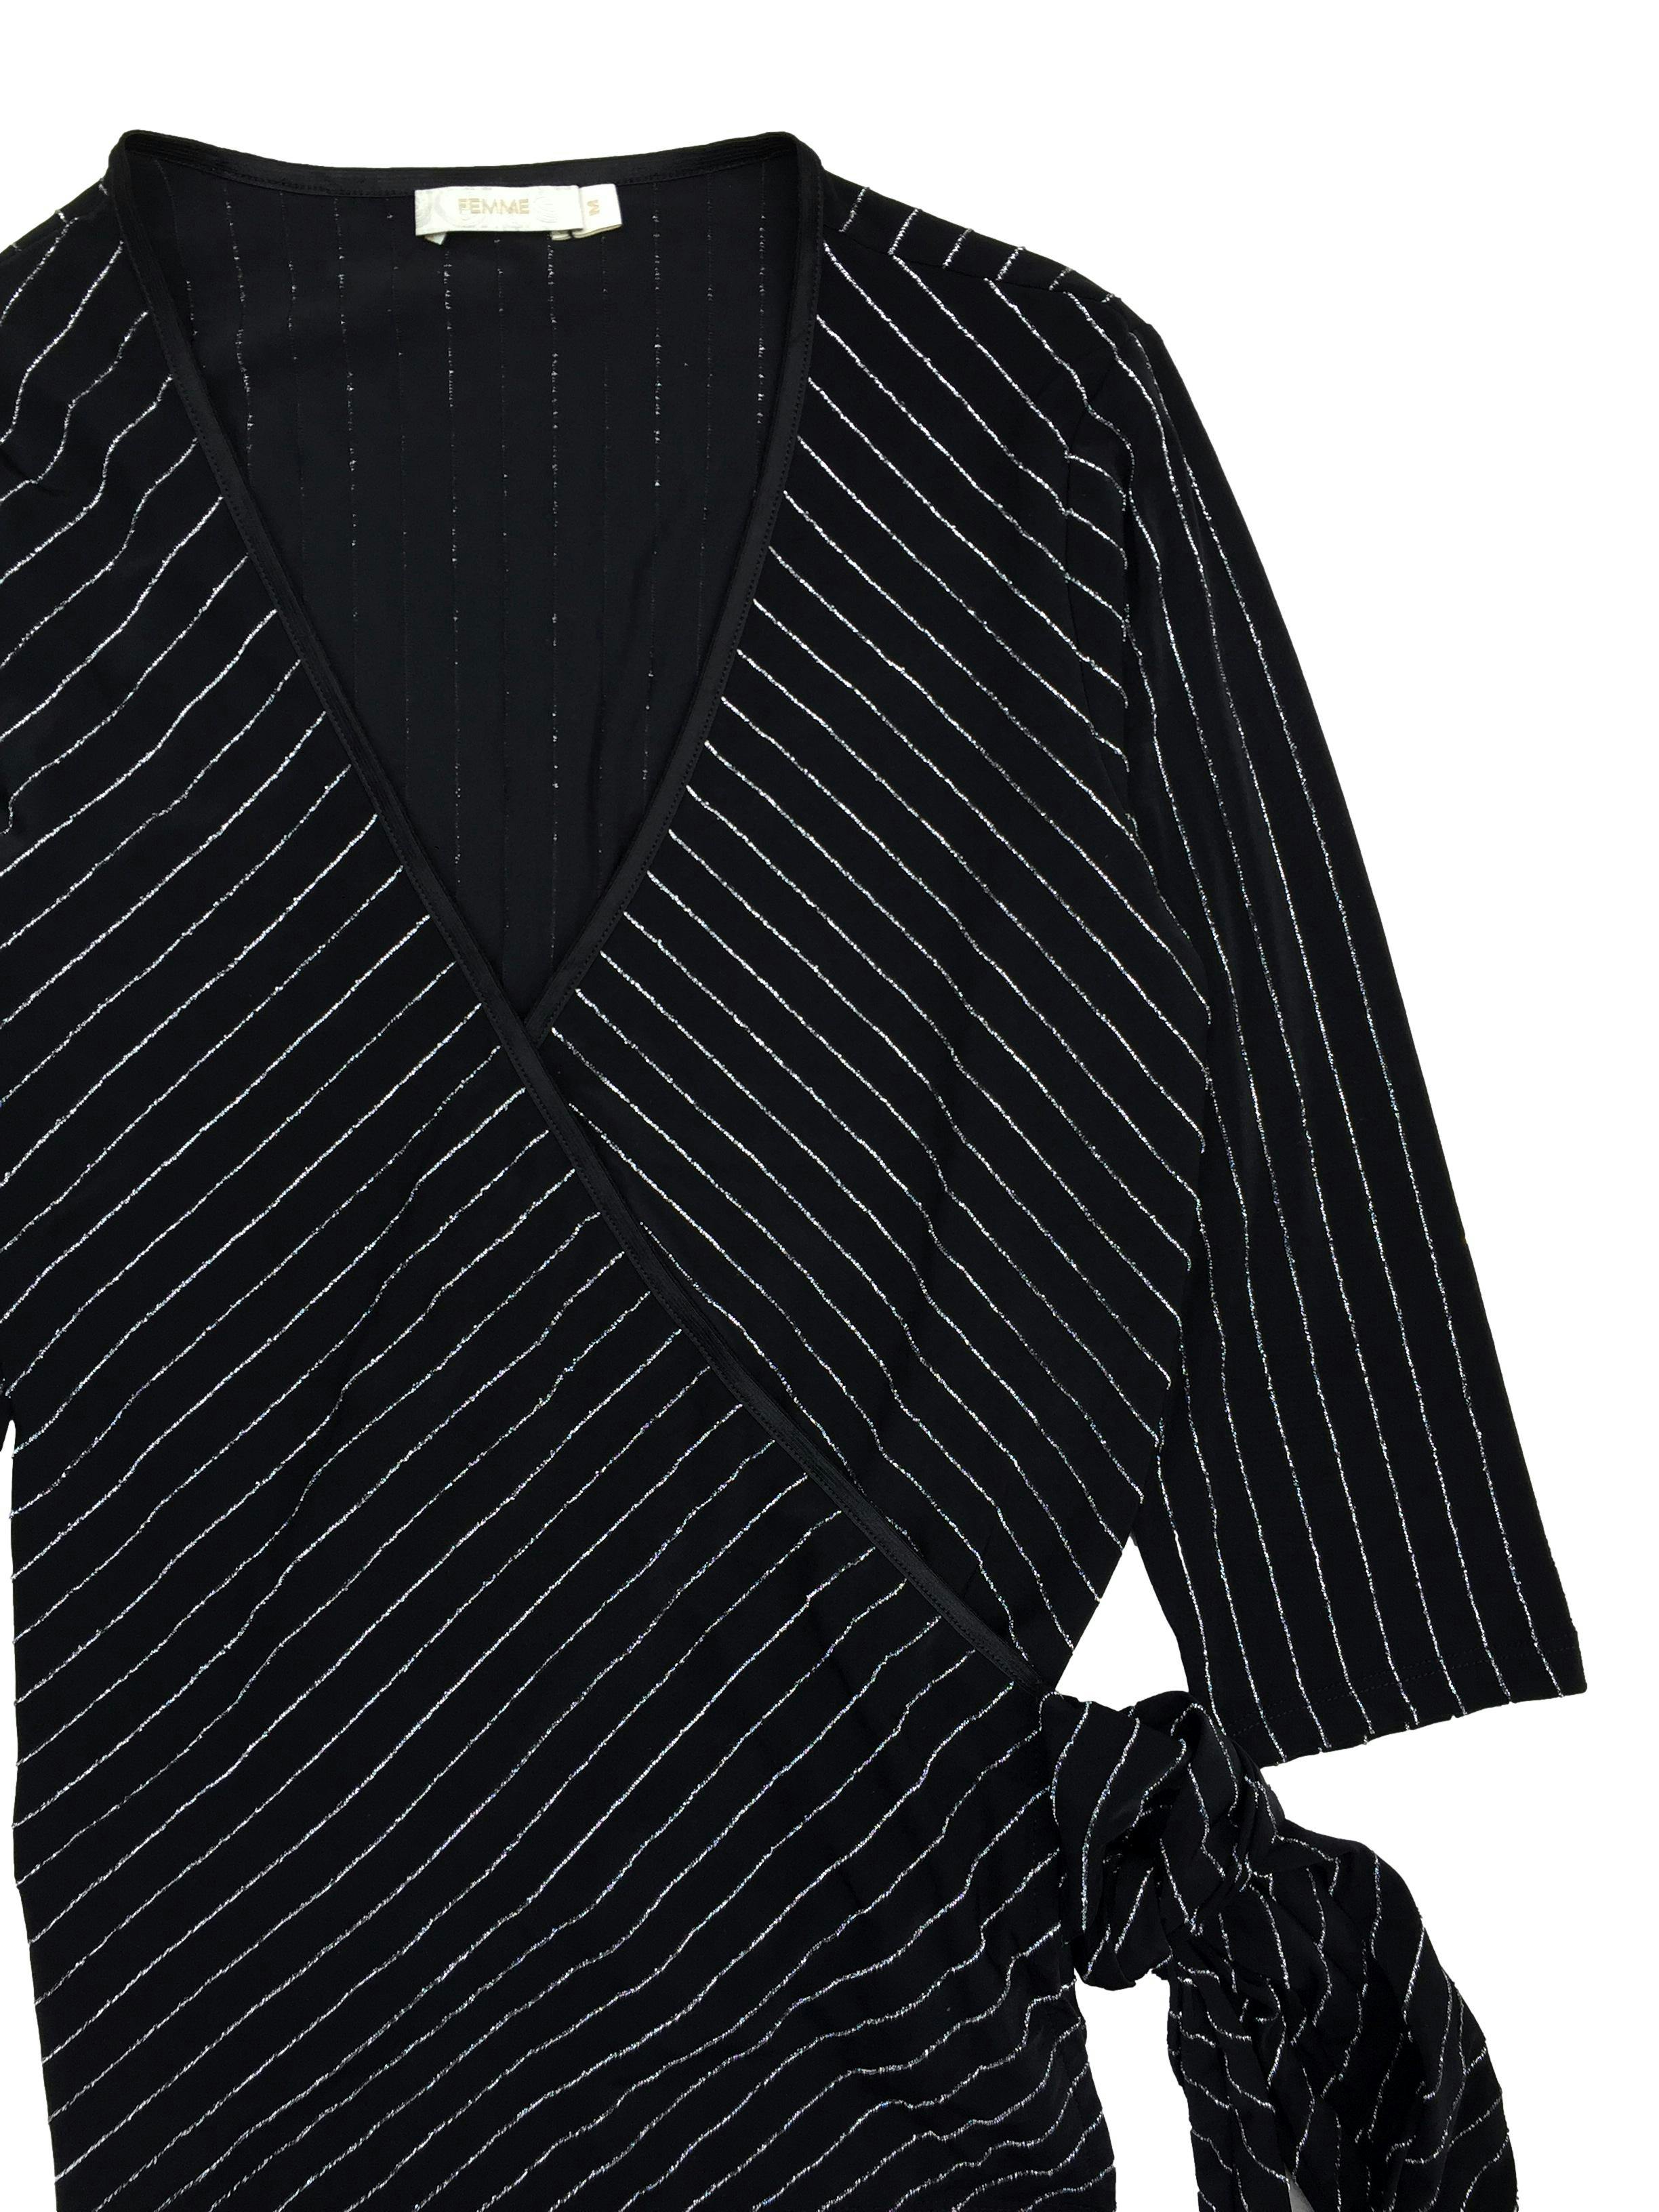 Blusa Femme cruzada negra stretch con líneas plateadas, manga 3/4. Busto 94cm Largo 55cm